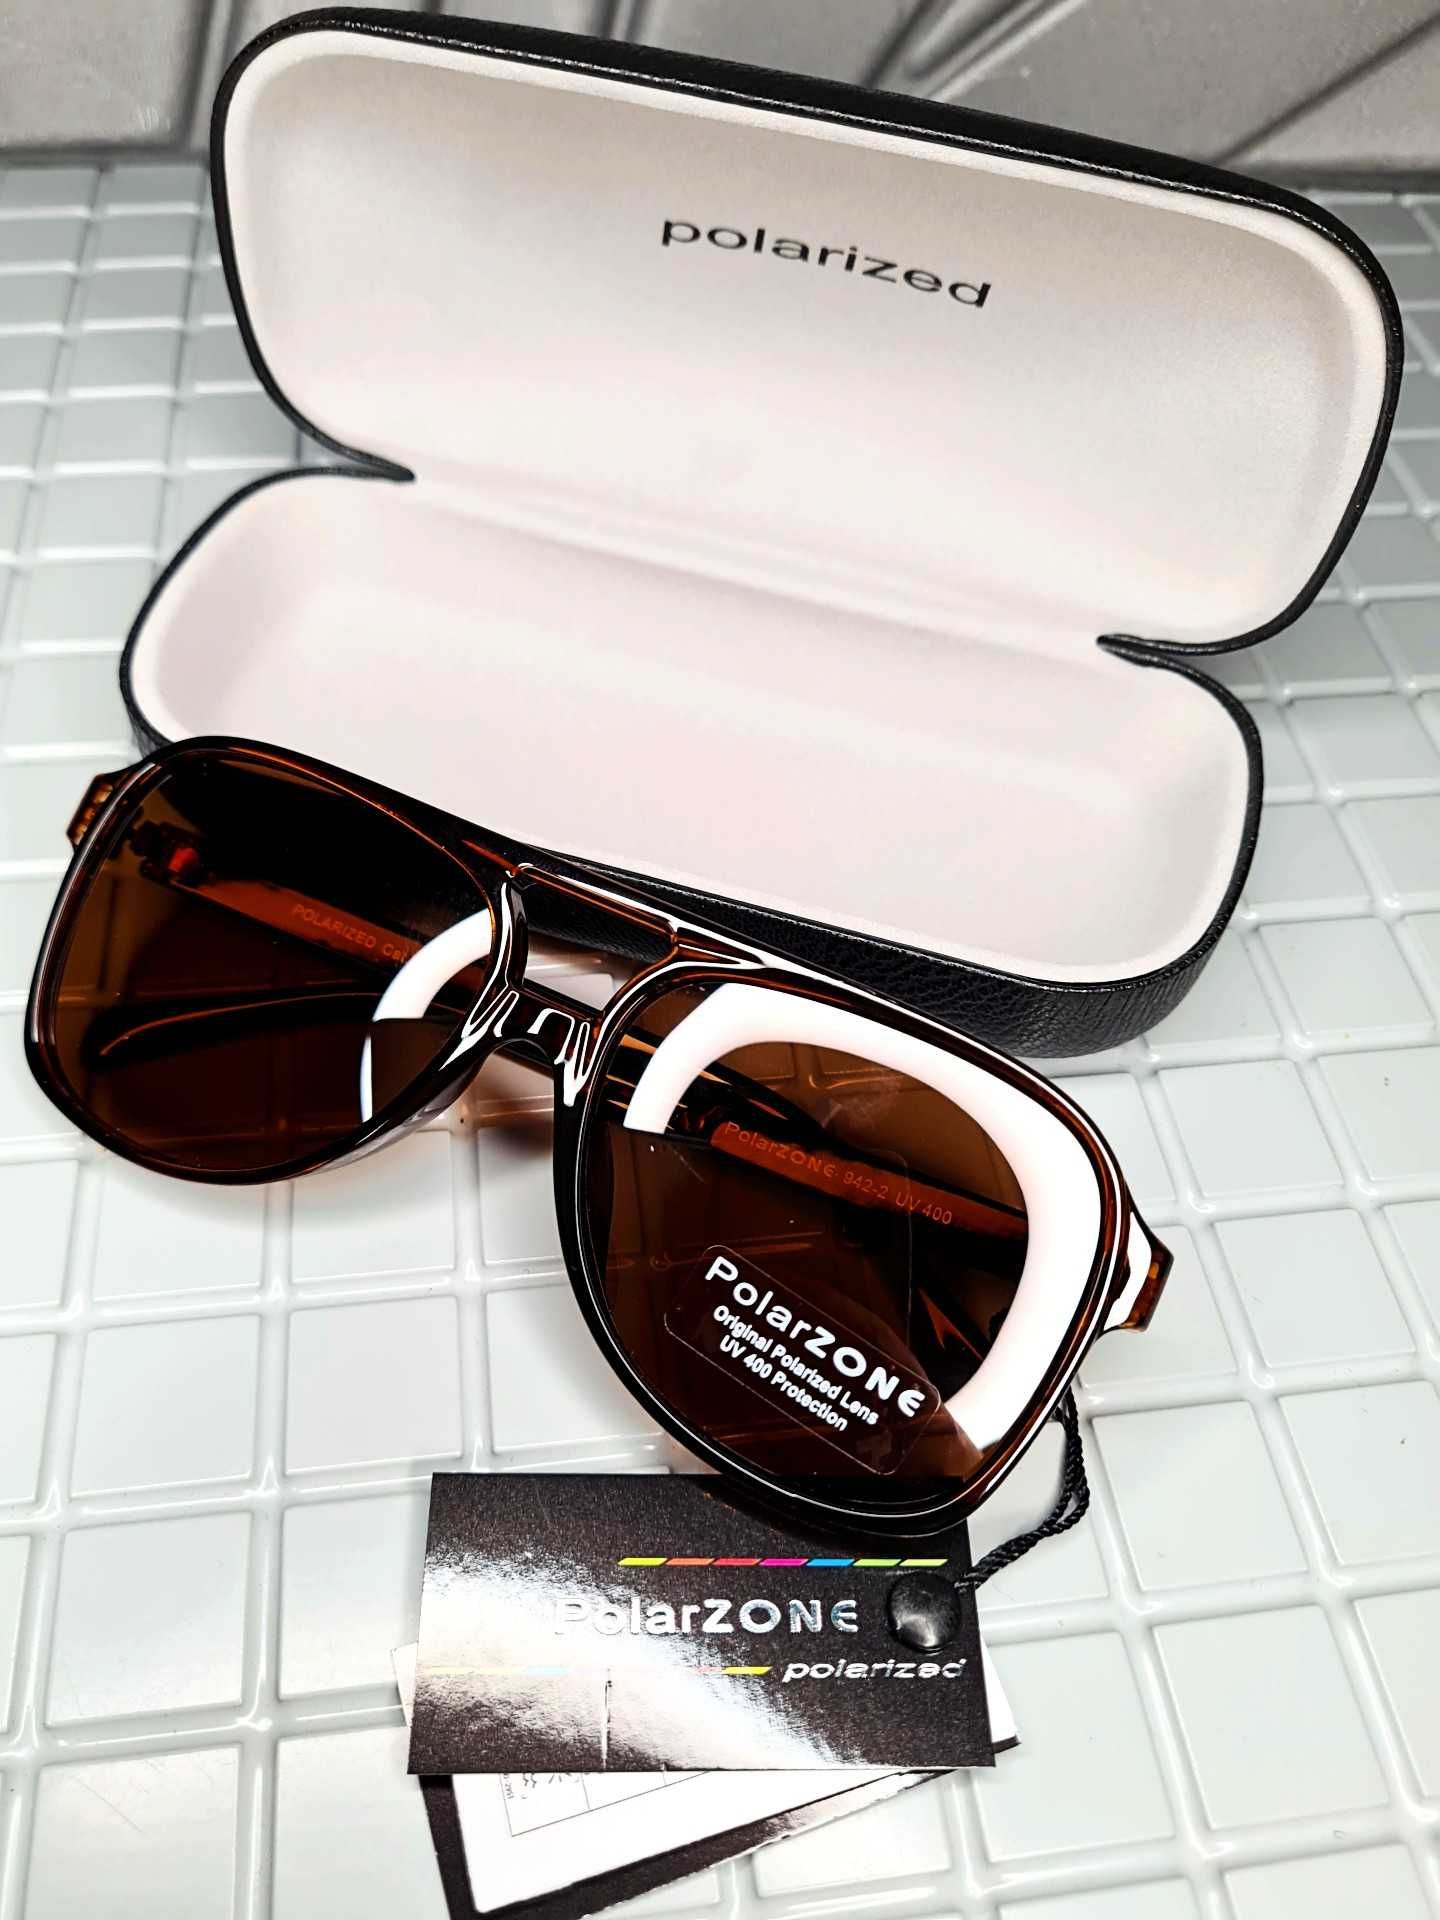 Okulary przeciwsłoneczne Polarzone - stylowe i wygodne